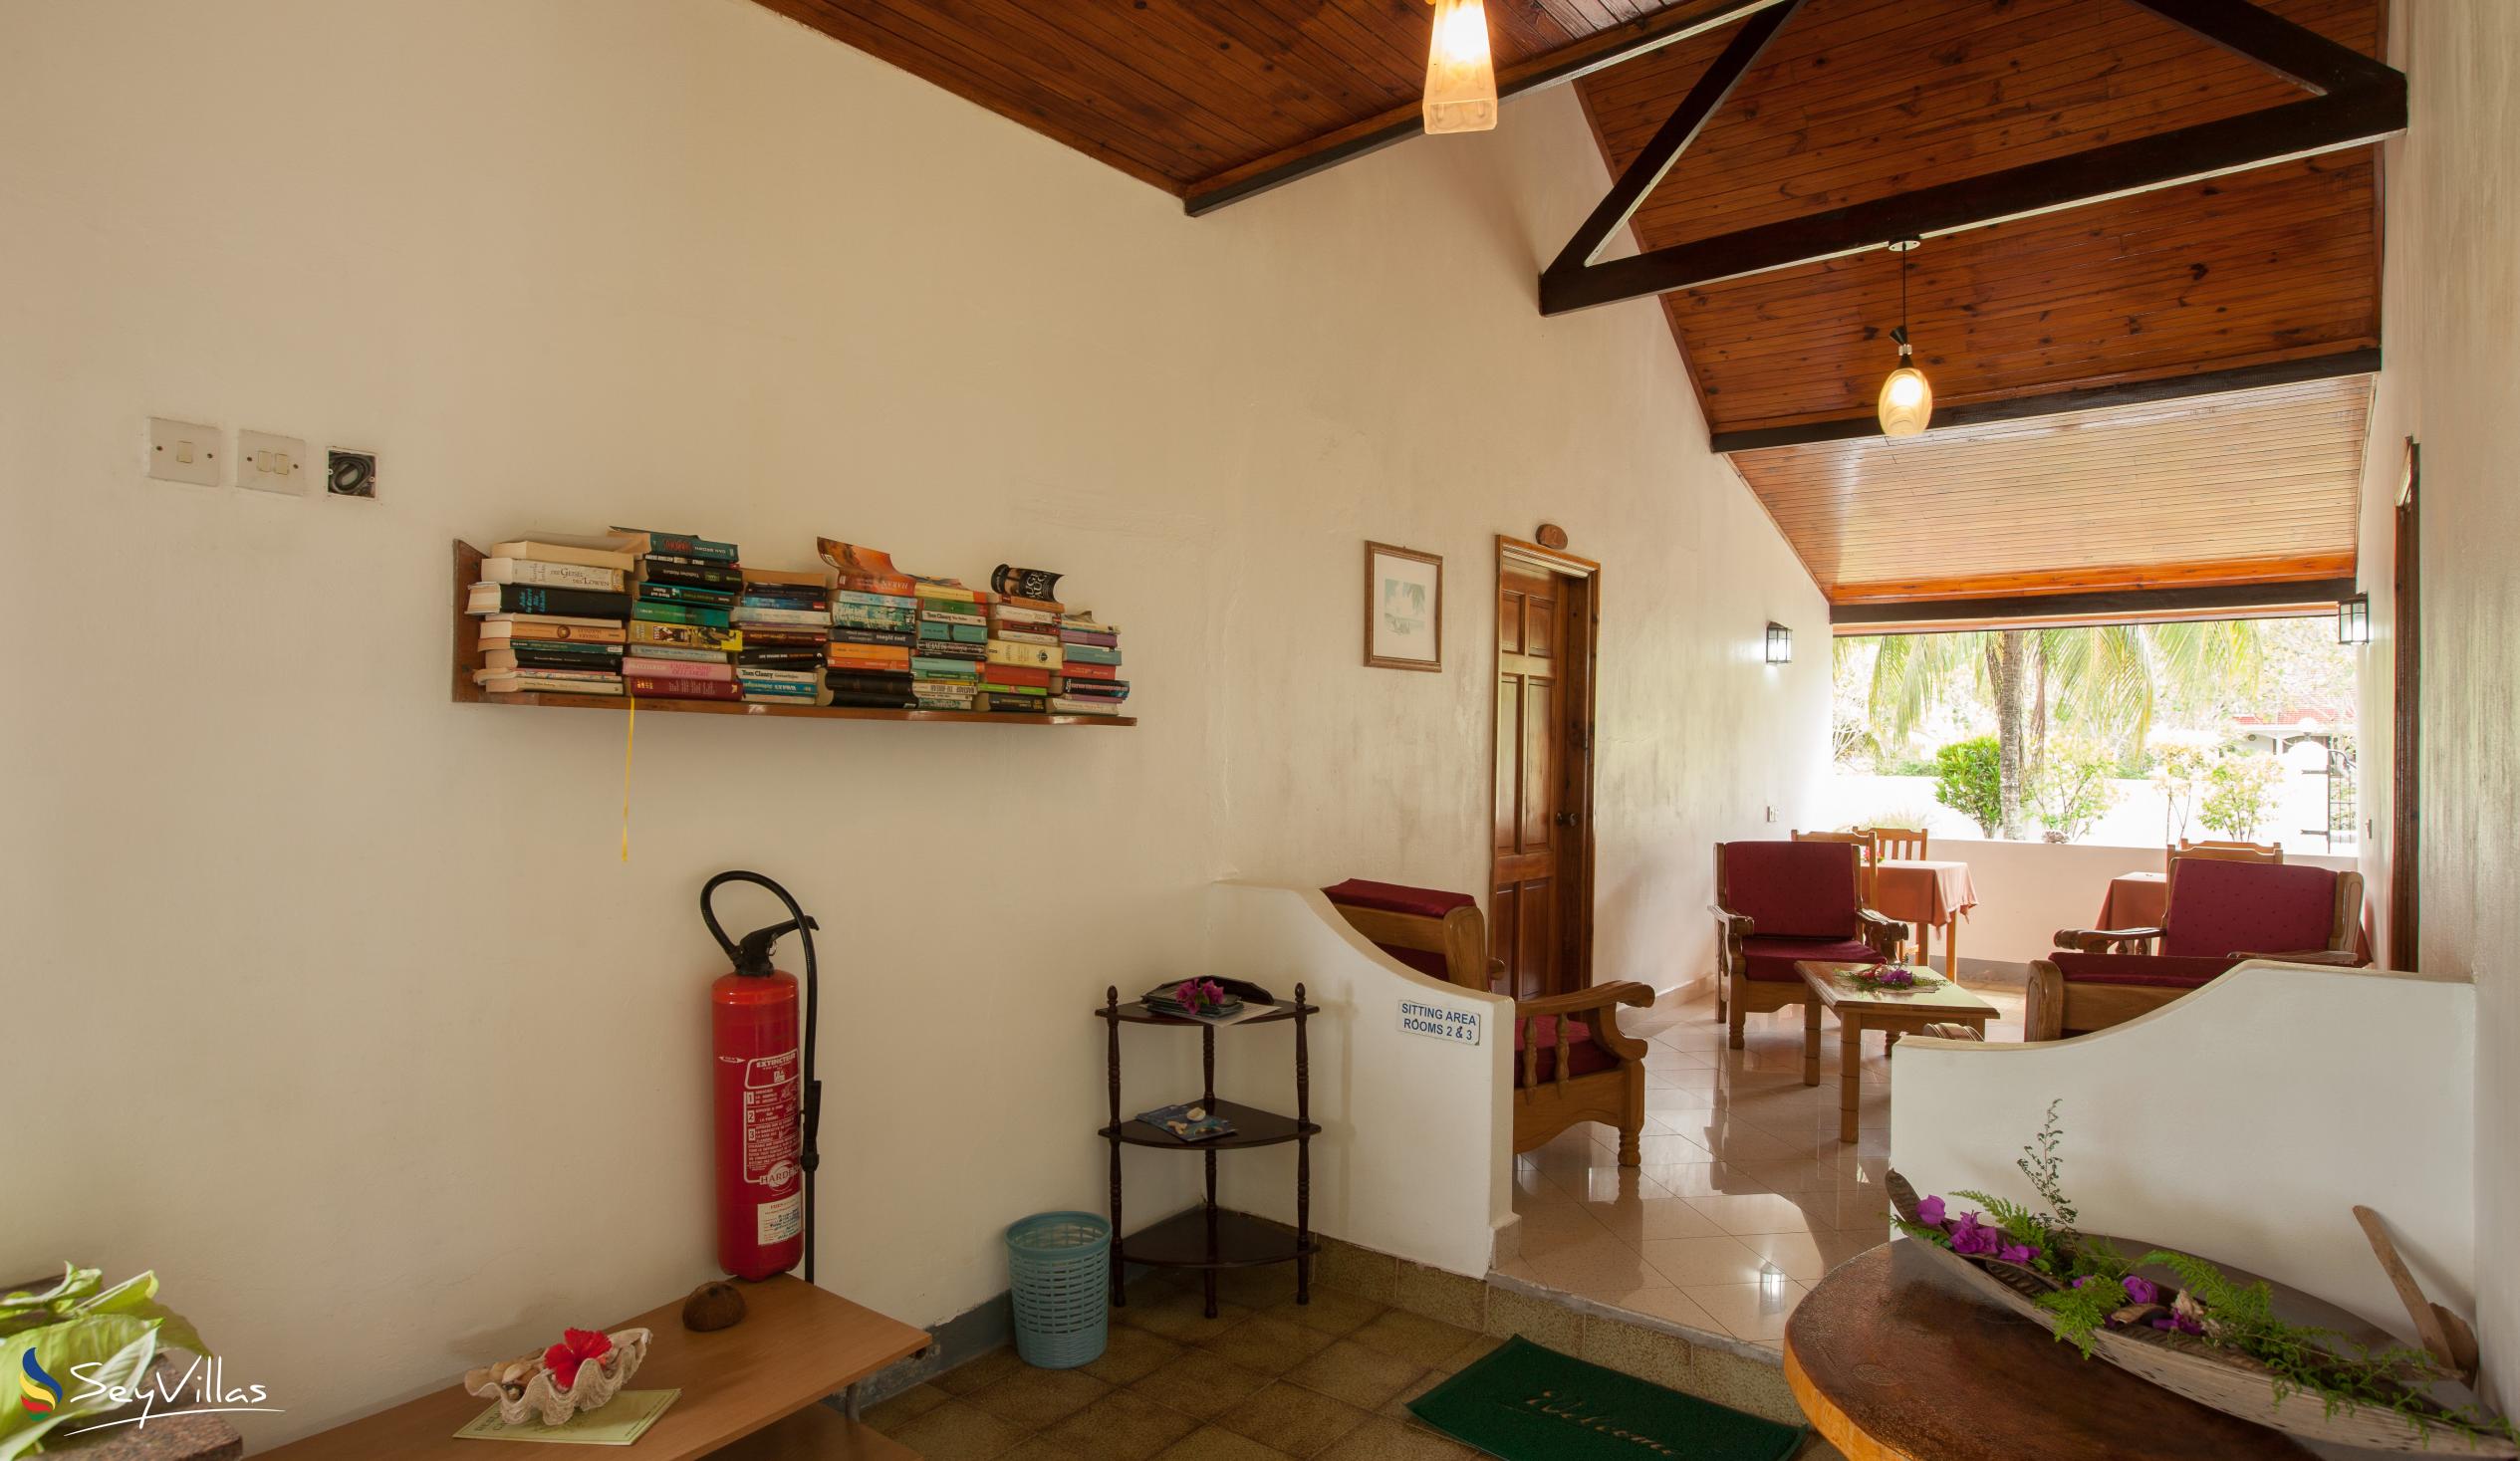 Foto 10: Beach Villa Guesthouse - Innenbereich - Praslin (Seychellen)